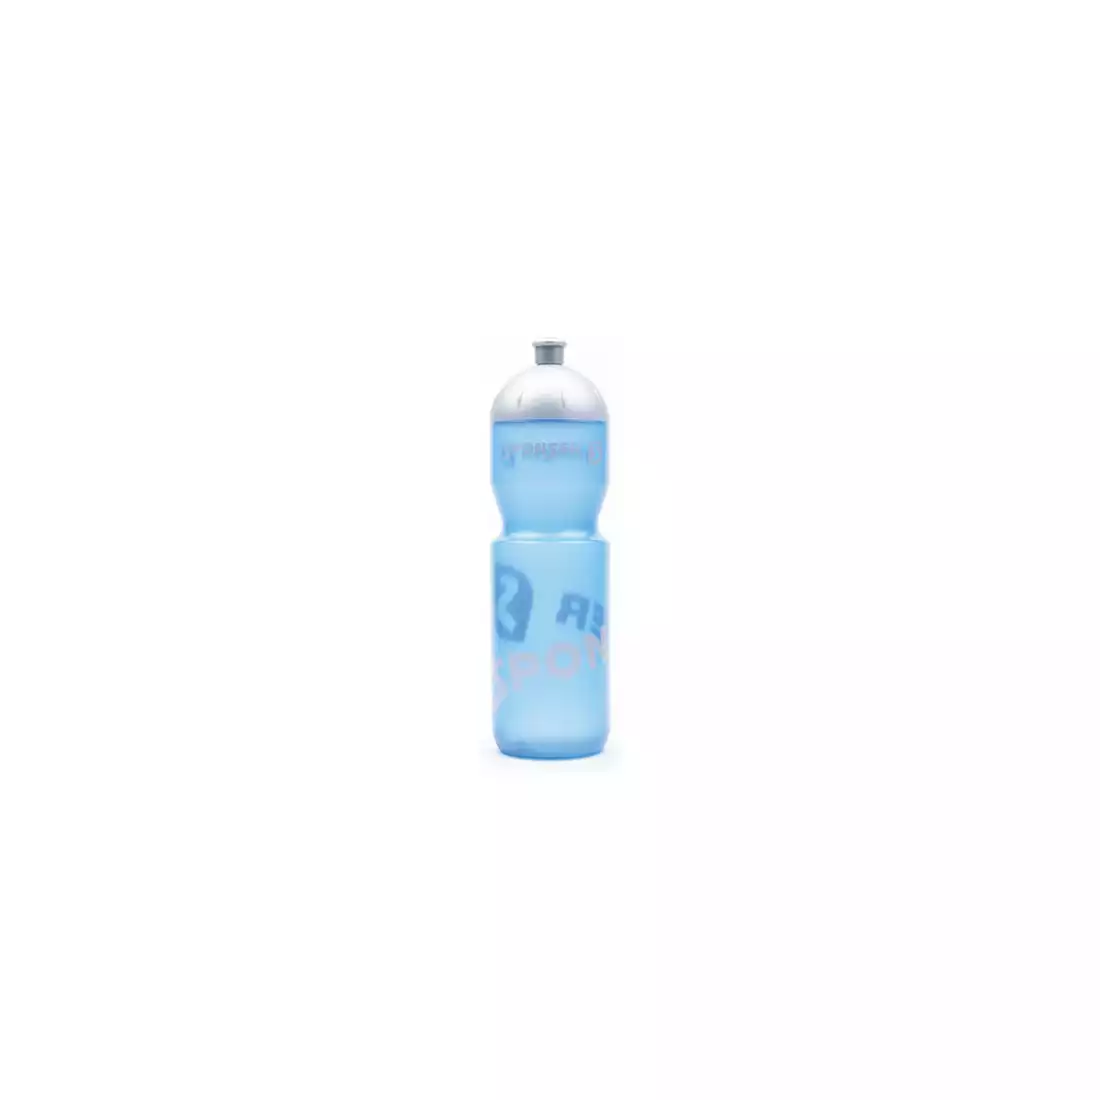 SPONSER NETTO fahrrad wasserflasche 750 ml, transparent blau/silber